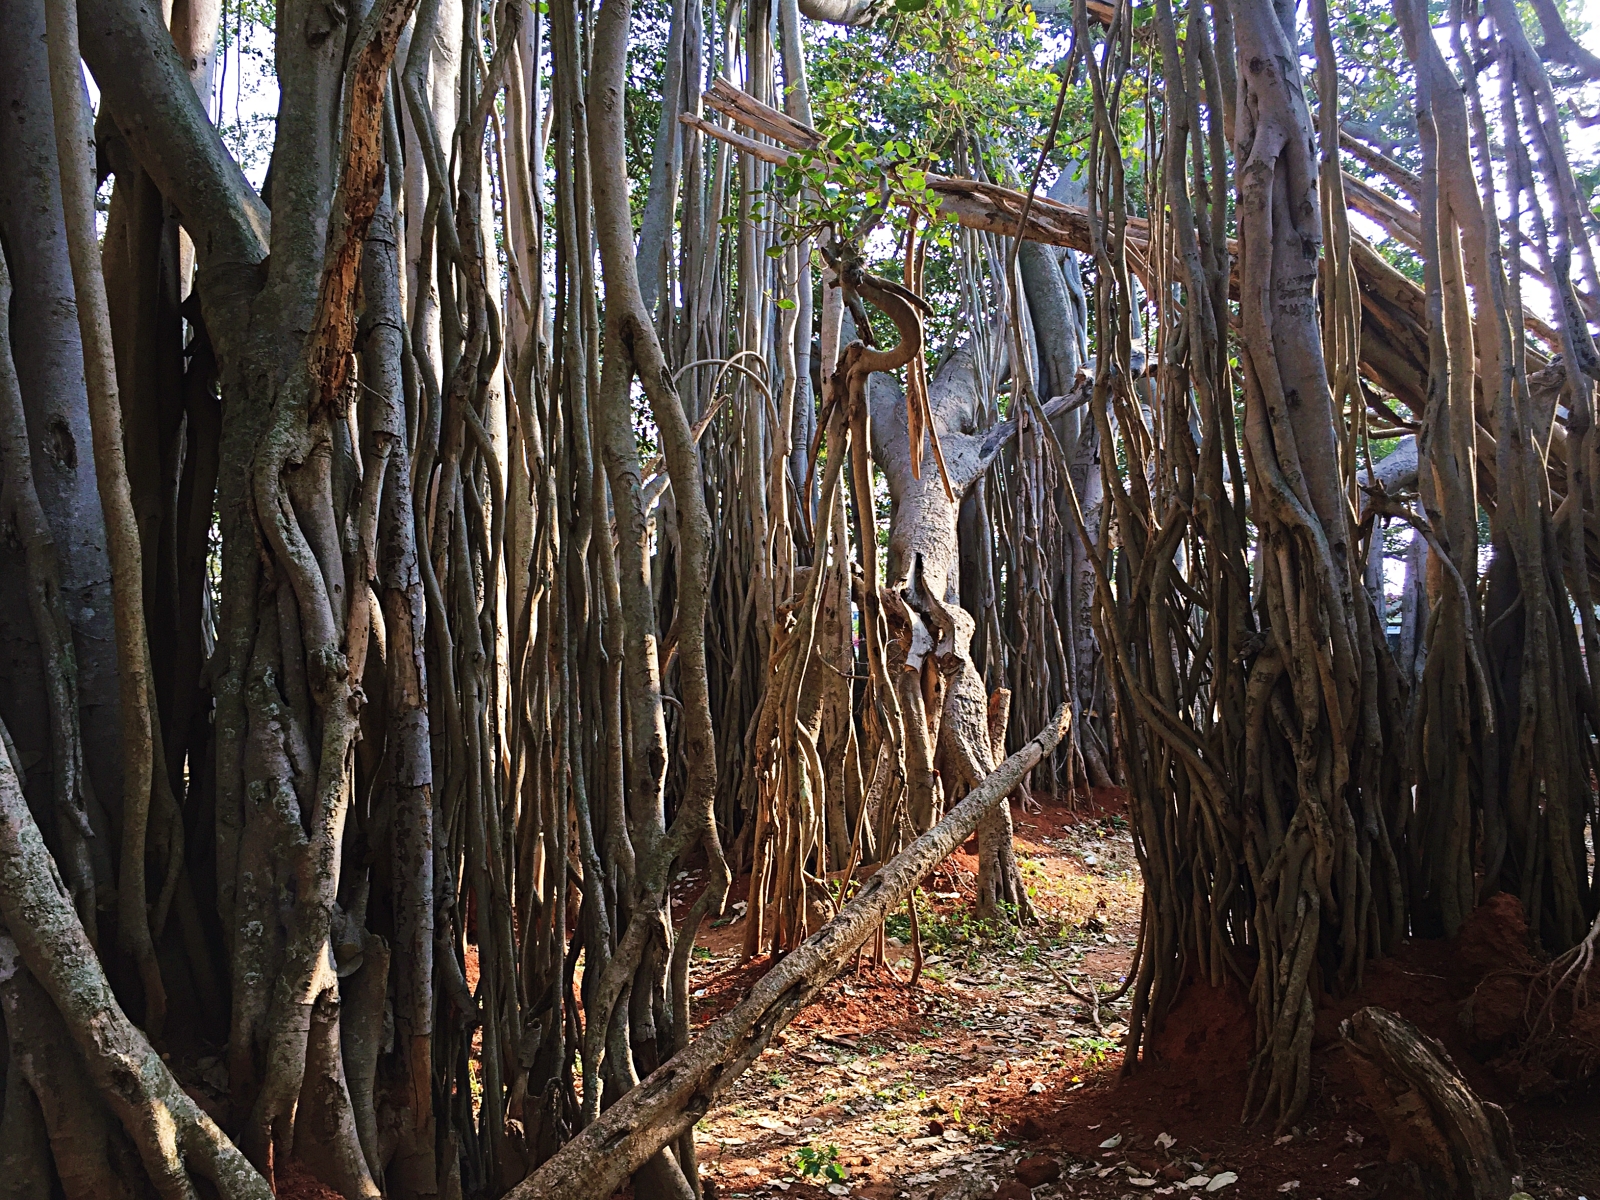 Dodda Alada Mara: A Banyan Tree that is 400 years old